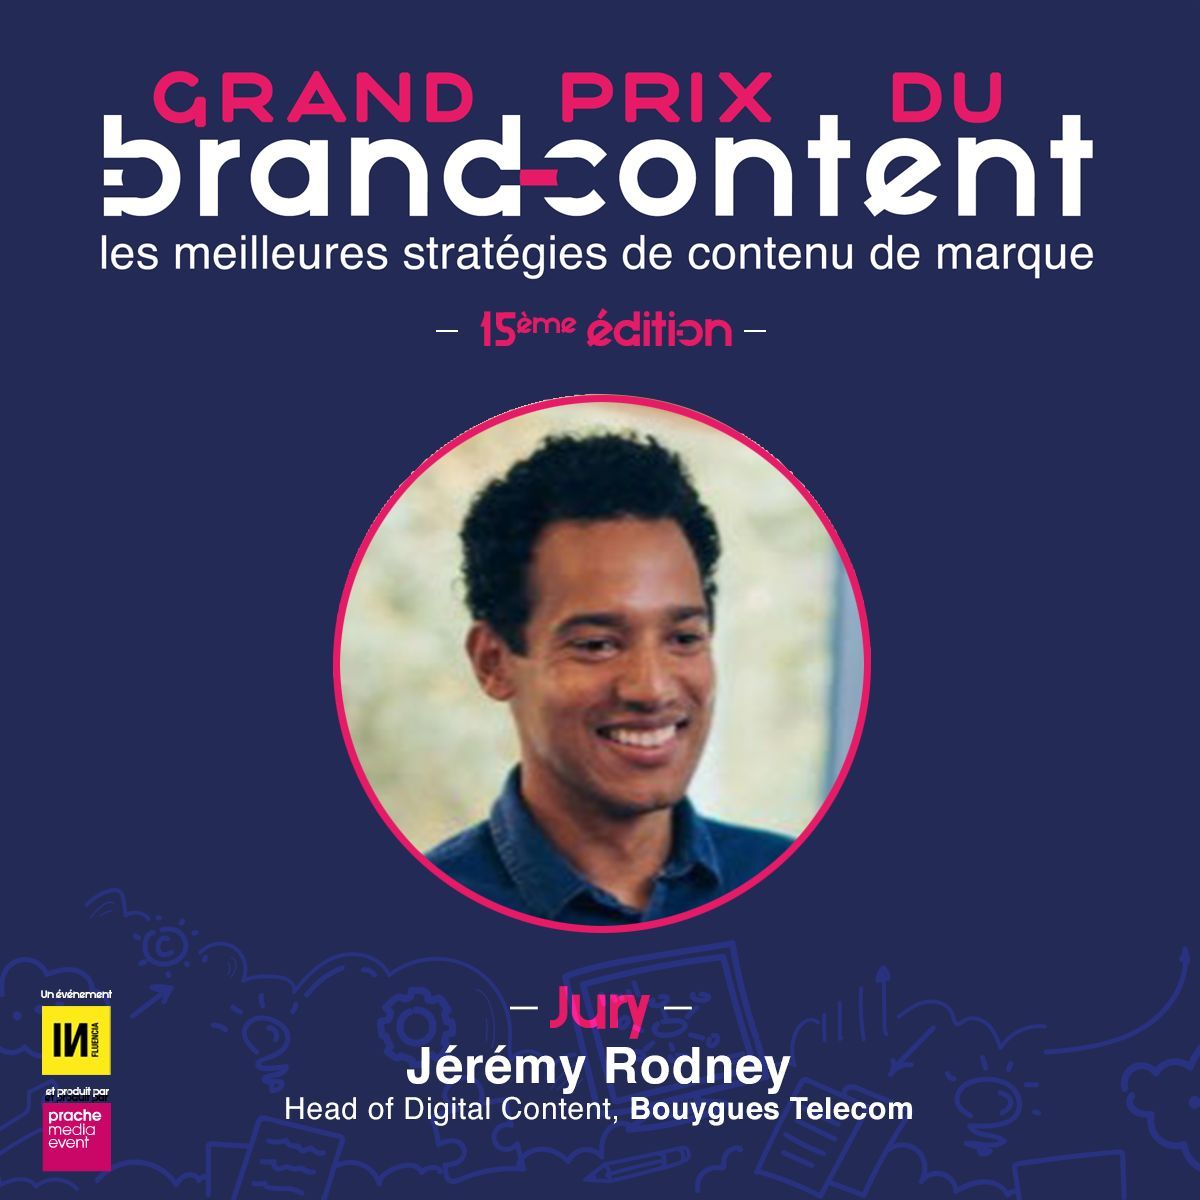 🔵 @jeremyr, Head of Digital Content de @bouyguestelecom, fait partie du jury du #GPBrandContent24 ! Candidatez jusqu'au 17 mai : grandprixdubrandcontent.com/candidature/